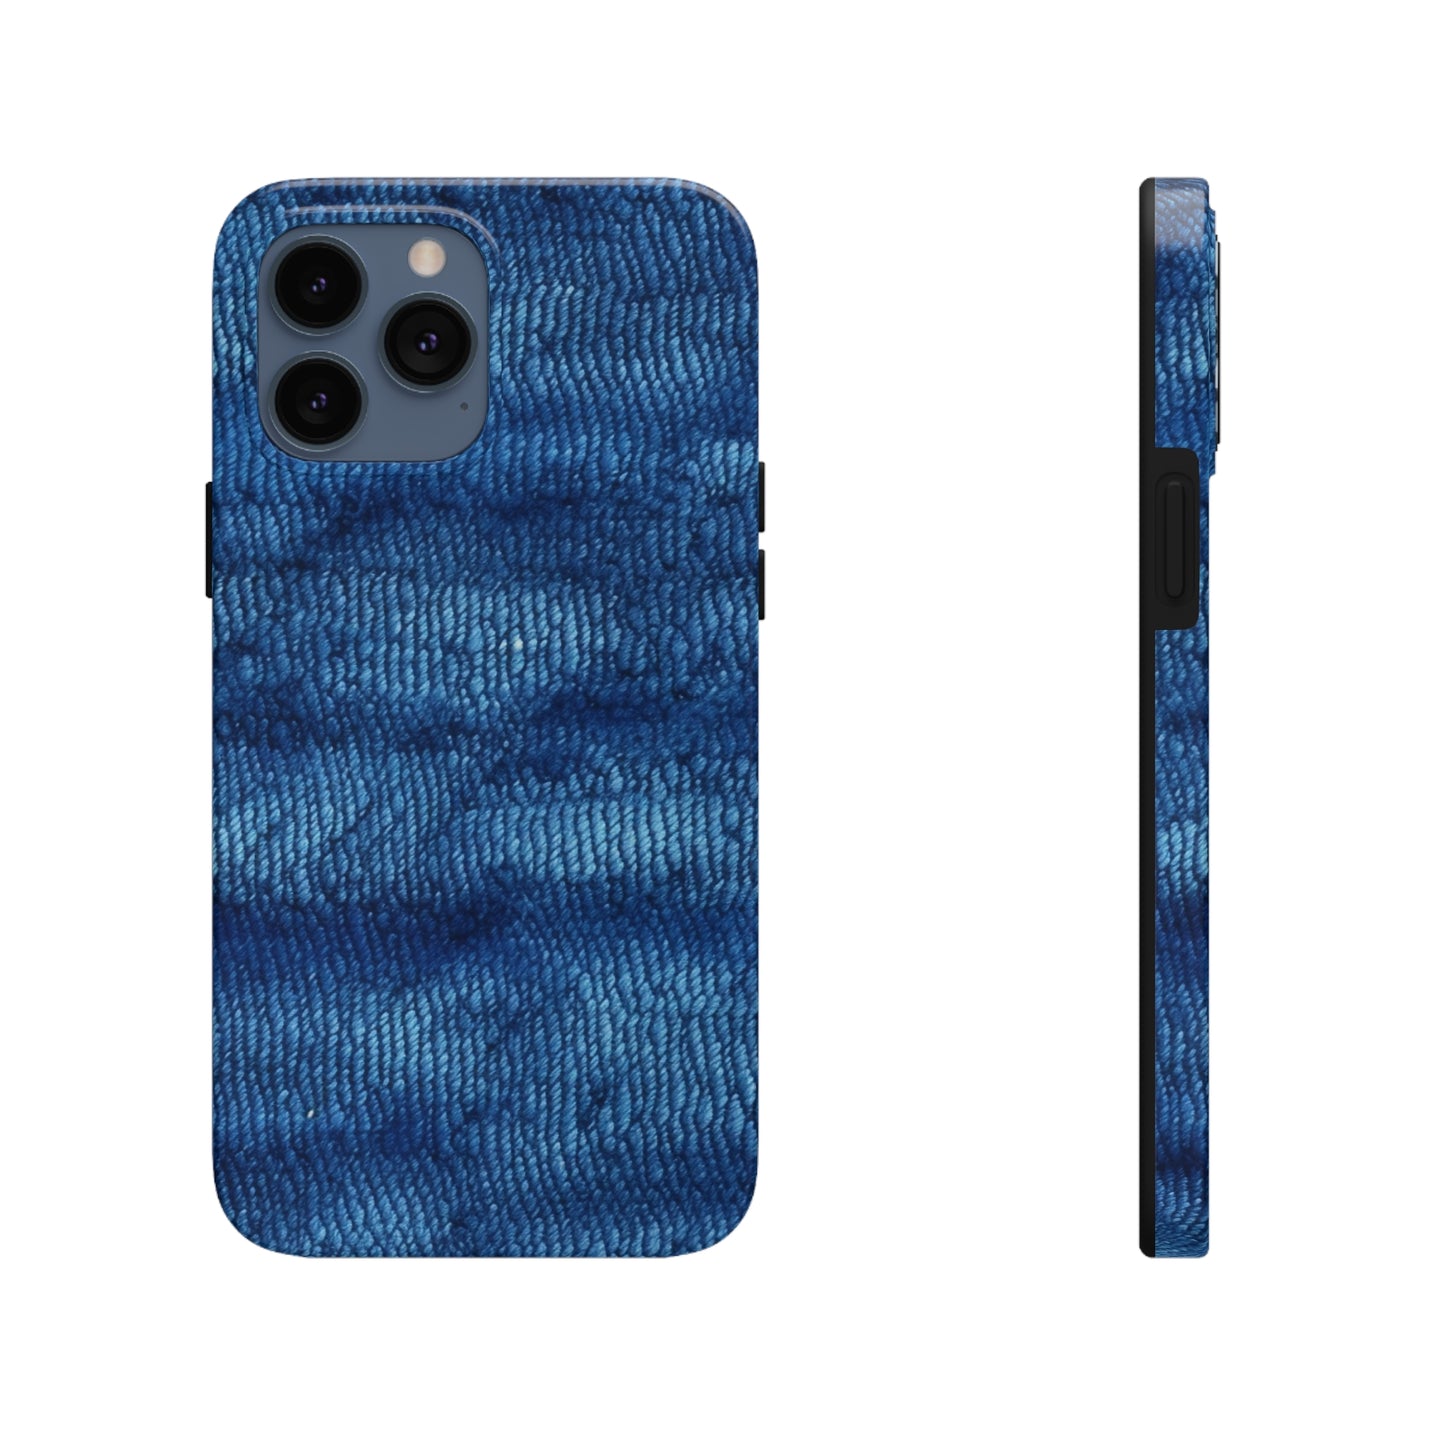 Blue Spectrum: Denim-Inspired Fabric Light to Dark - Tough Phone Cases